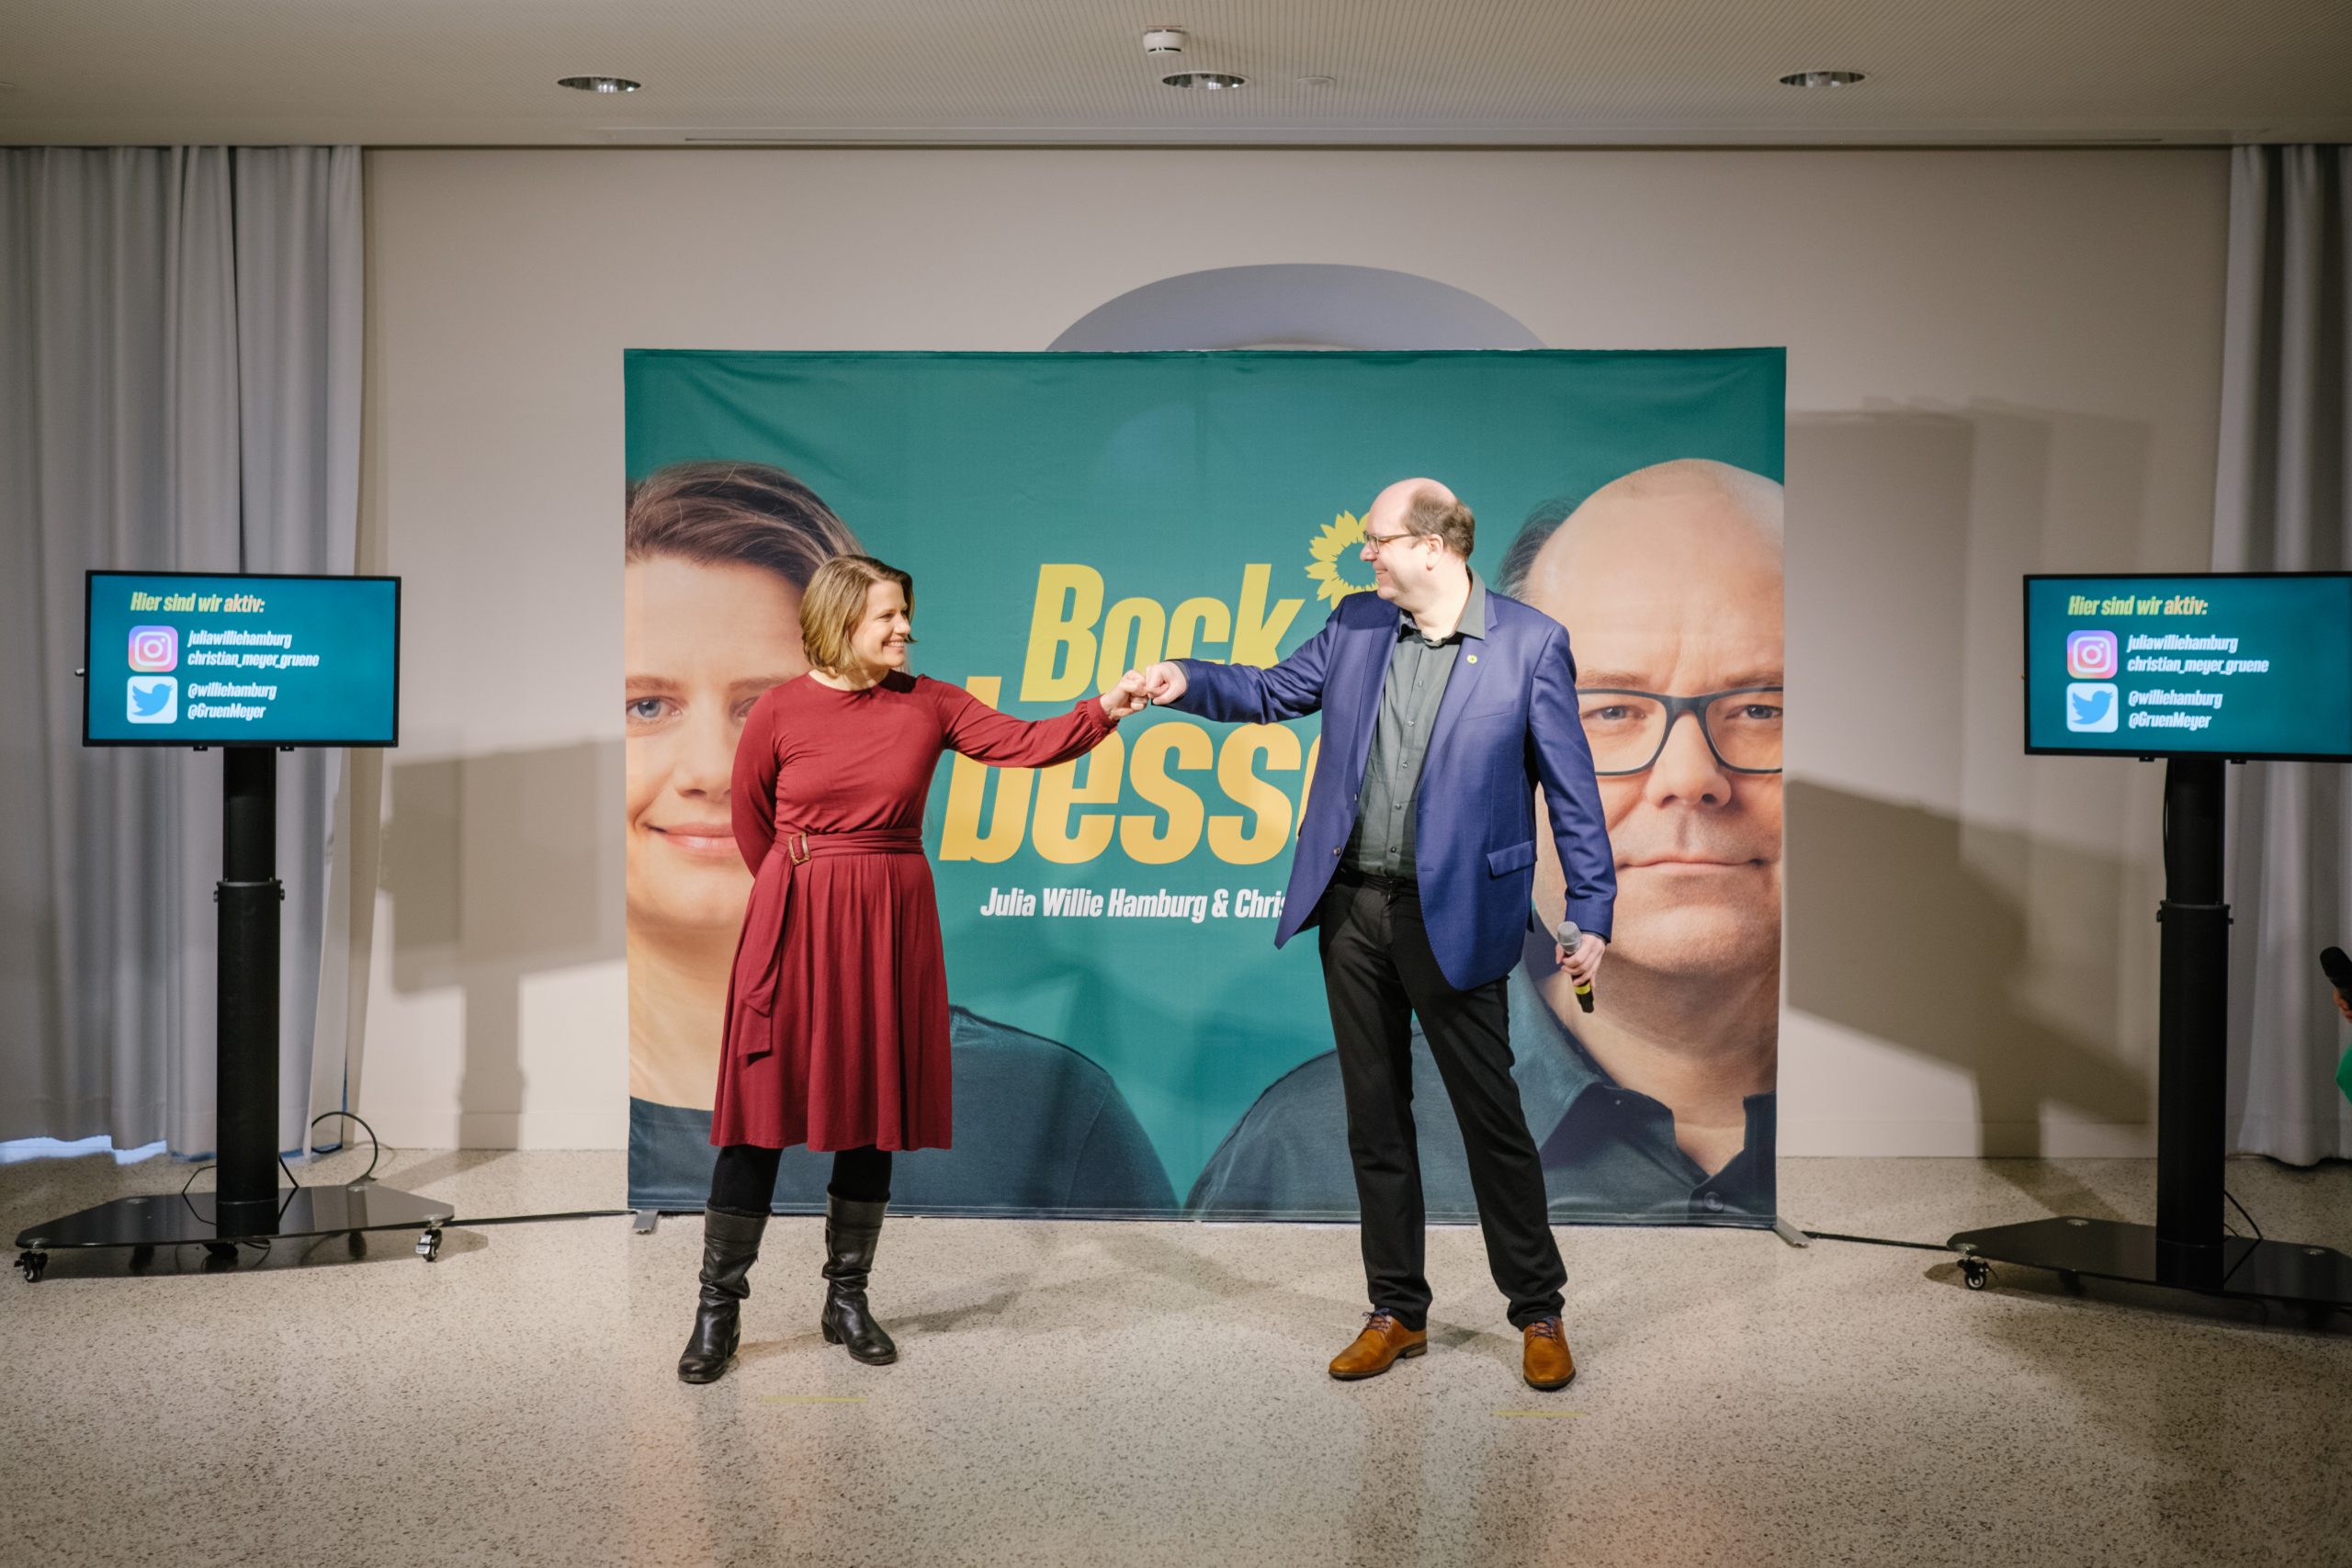 Die Spitzenkandidaten Julia Willie Hamburg und Christian Meyer (beide Bündnis 90/Die Grünen) stehen bei der Pressekonferenz im Landtag zur Vorstellung der beiden Spitzenkandidaten der Grünen für die kommende Landtagswahl in Niedersachsen.